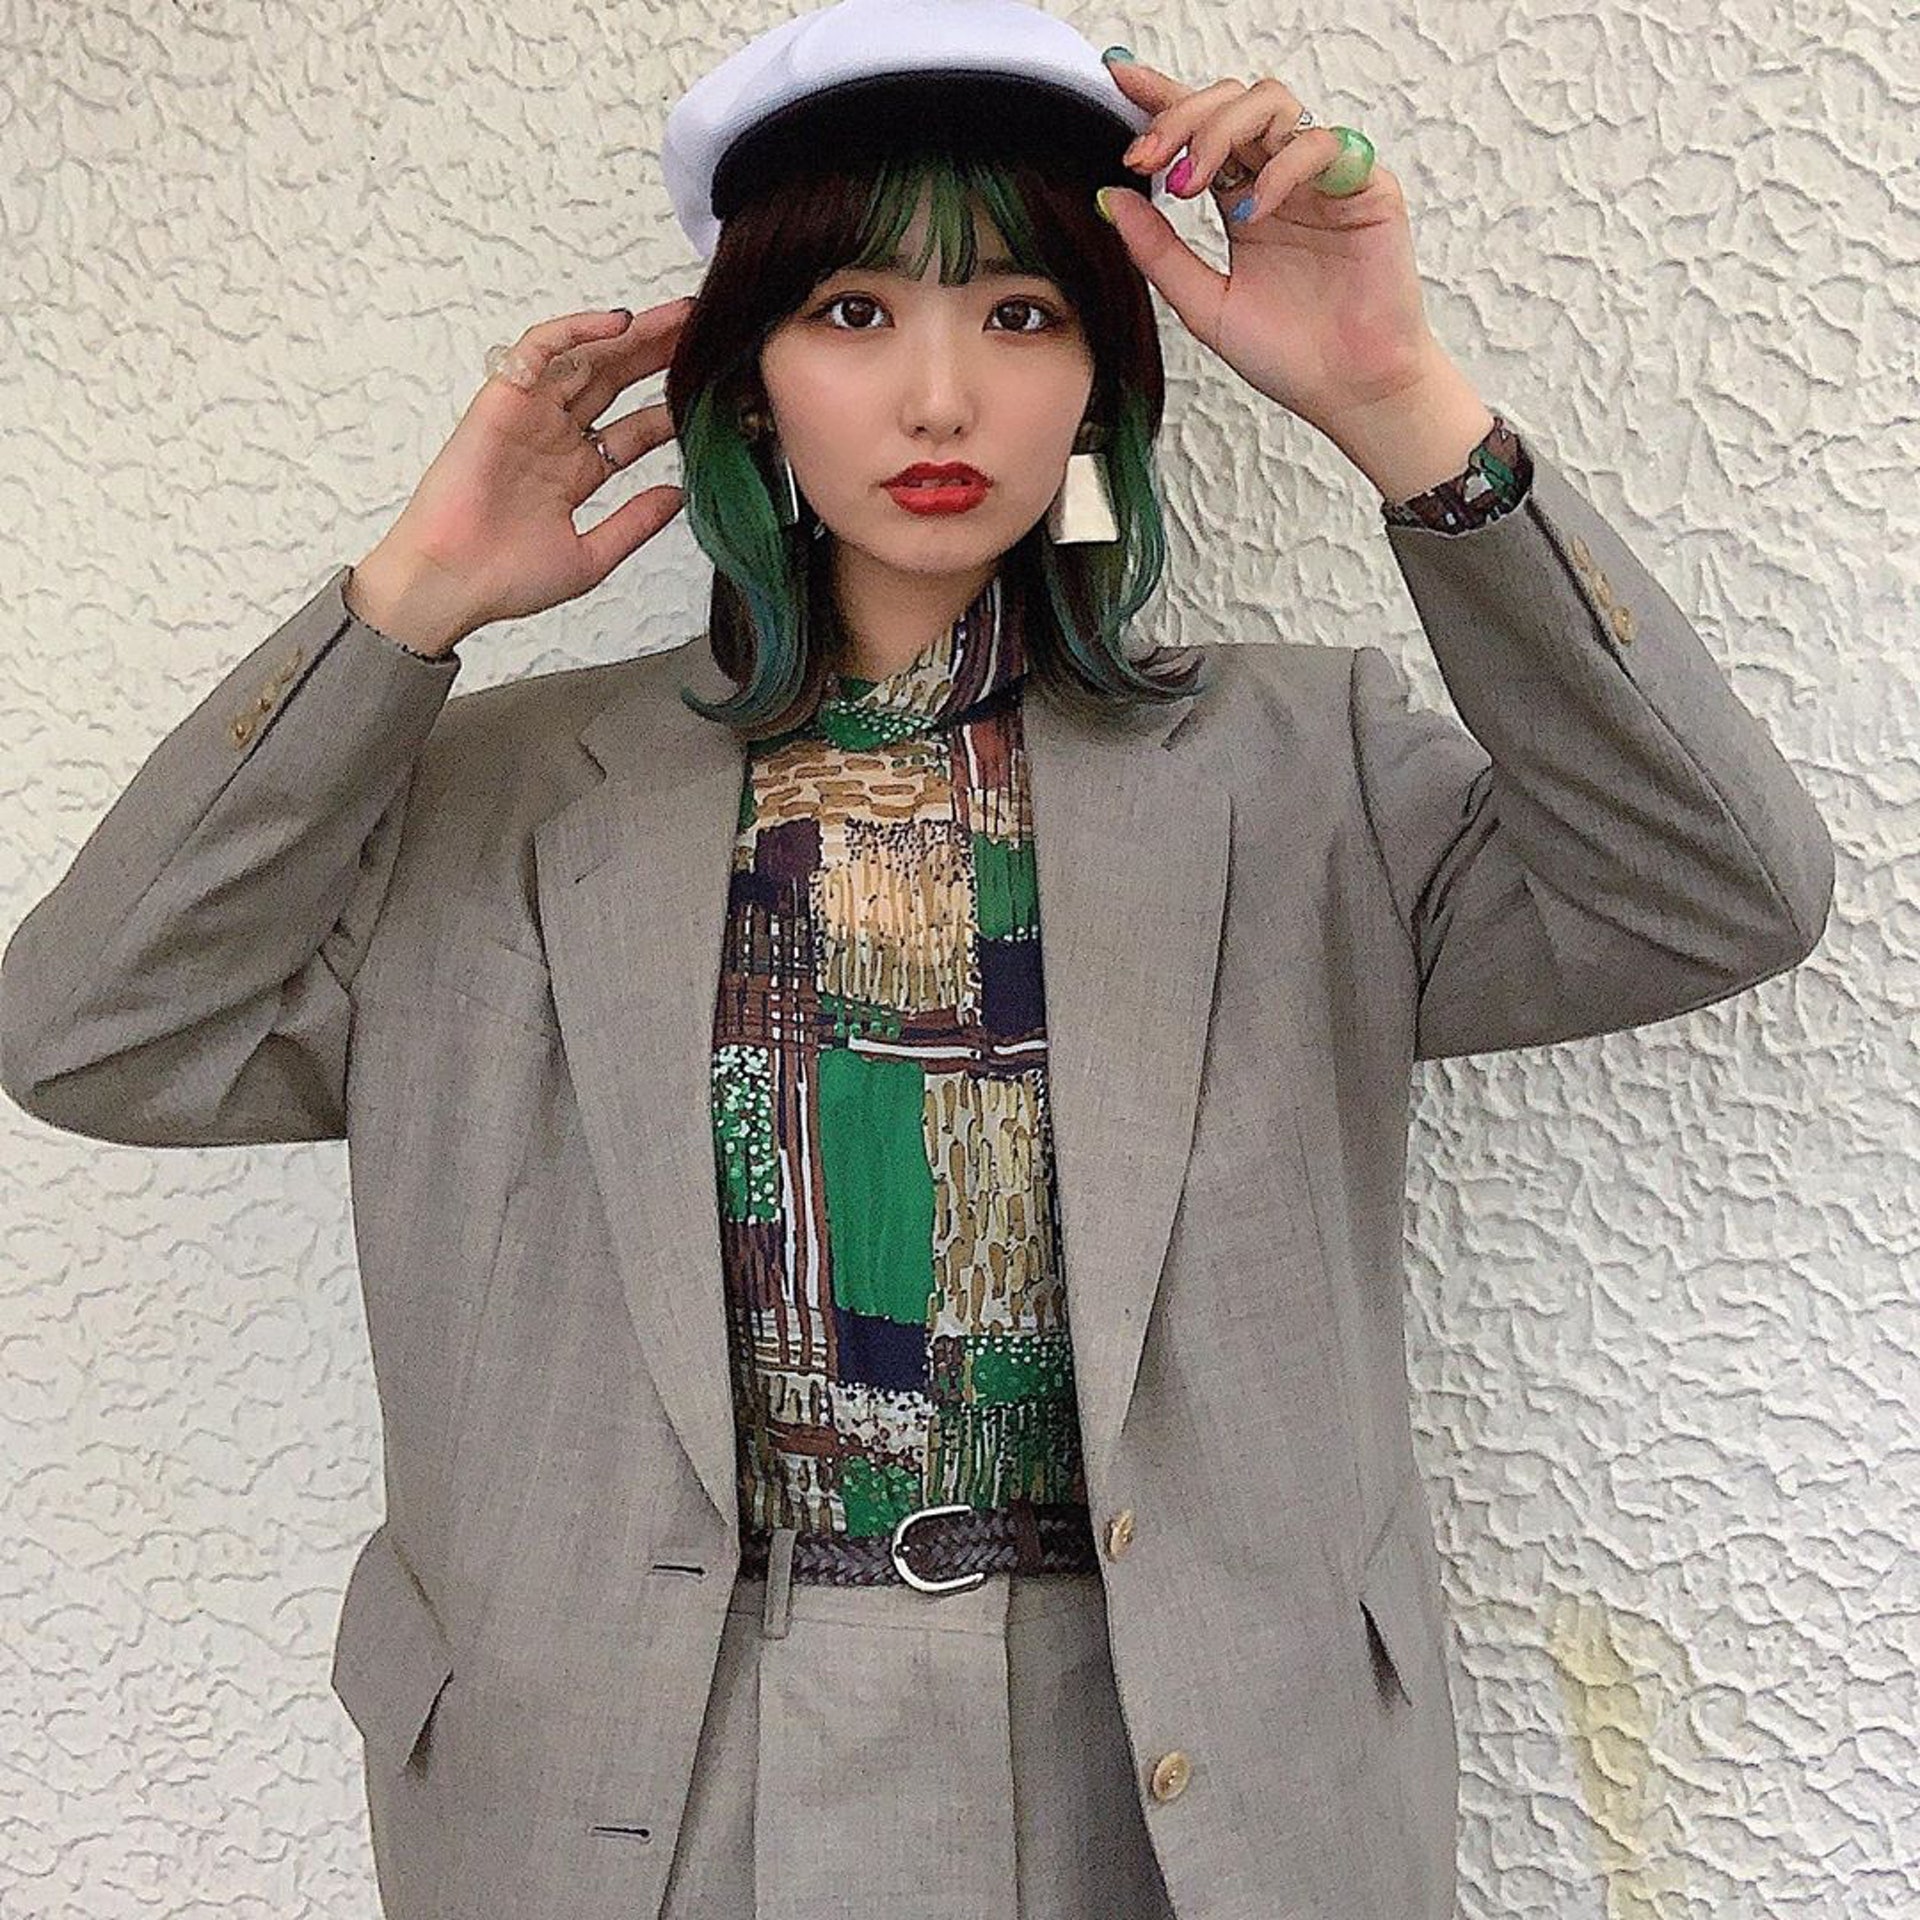 日本女生Chaki的YouTube Channel主要分享有關美妝、穿搭以及飲食等生活資訊。(__nmsk13@Instagram)